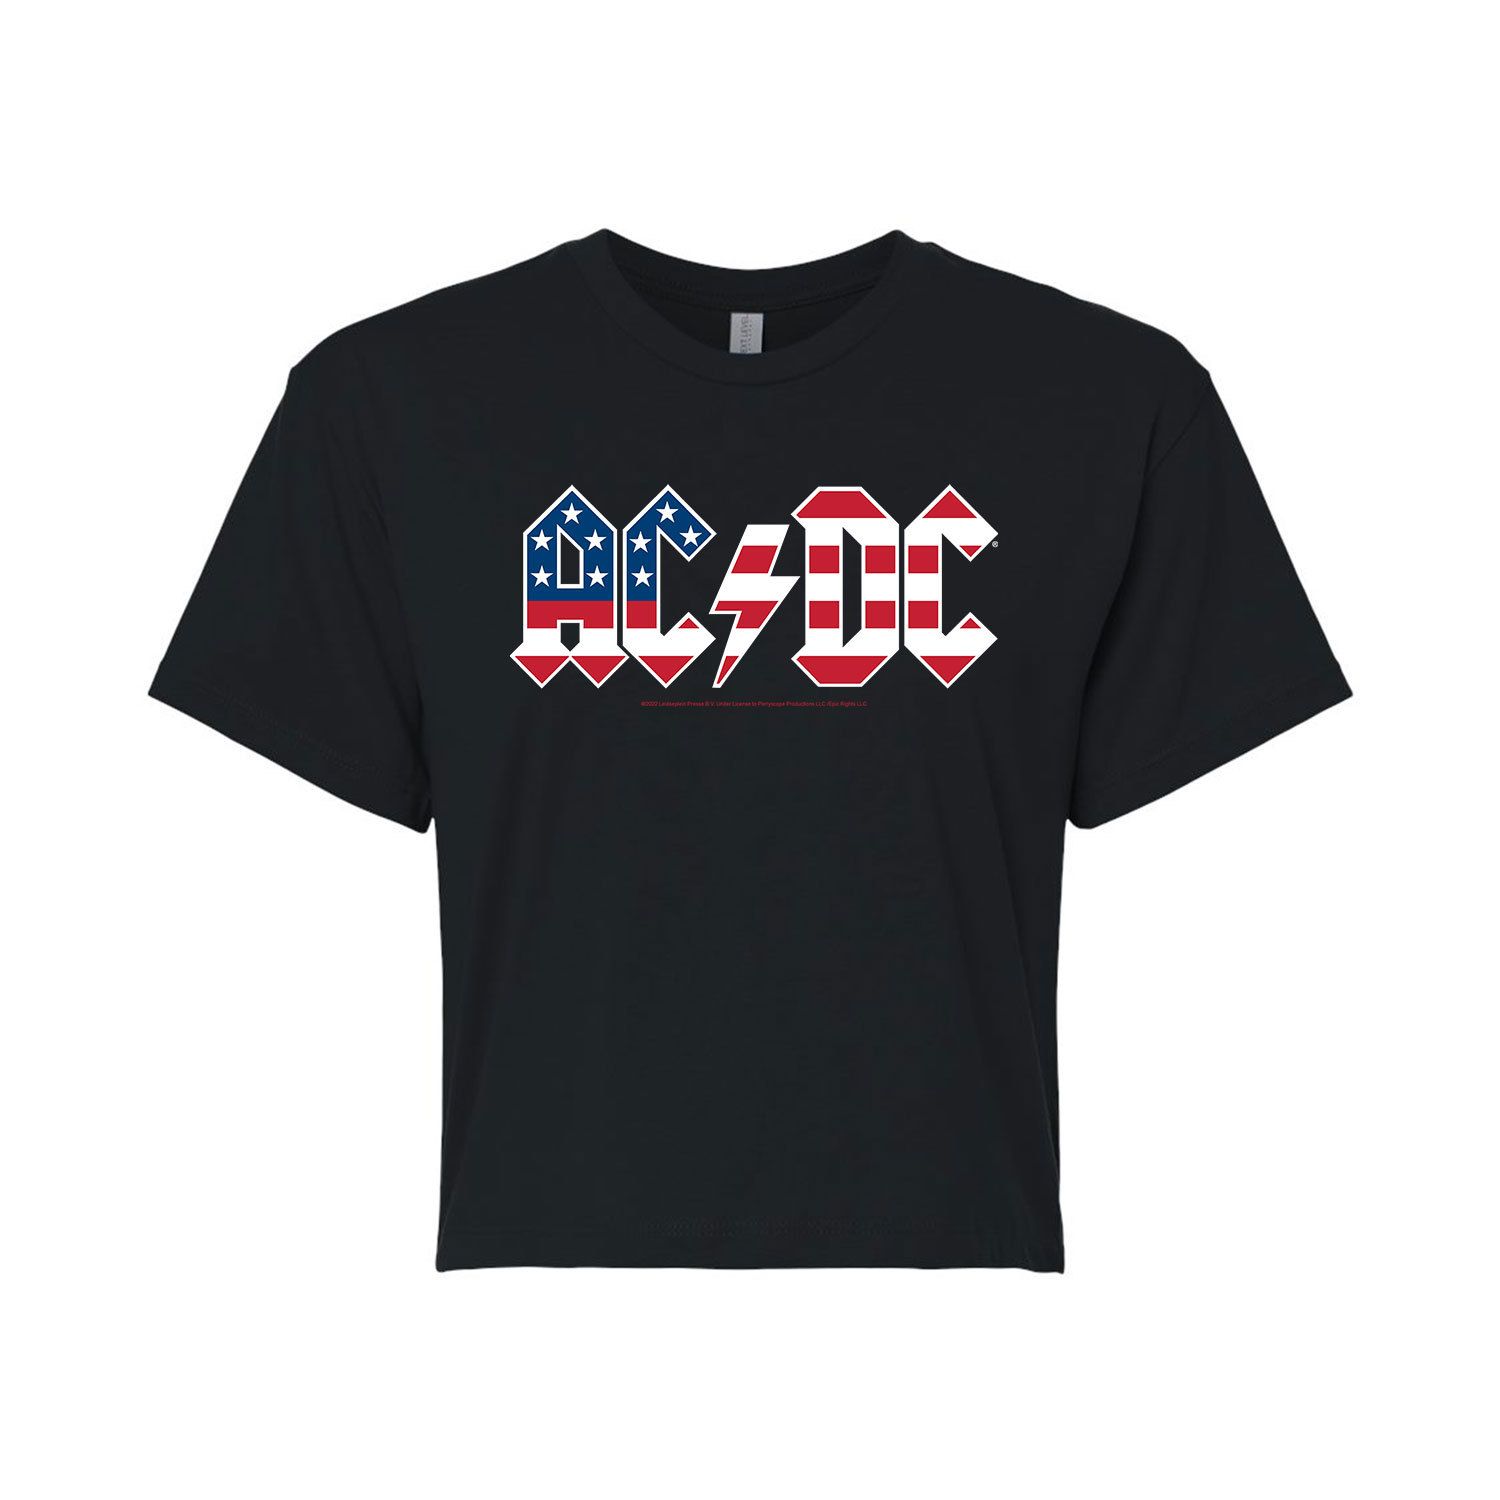 Укороченная футболка с логотипом AC/DC Patriotic для юниоров Licensed Character укороченная худи с графическим рисунком ac dc patriotic для юниоров licensed character